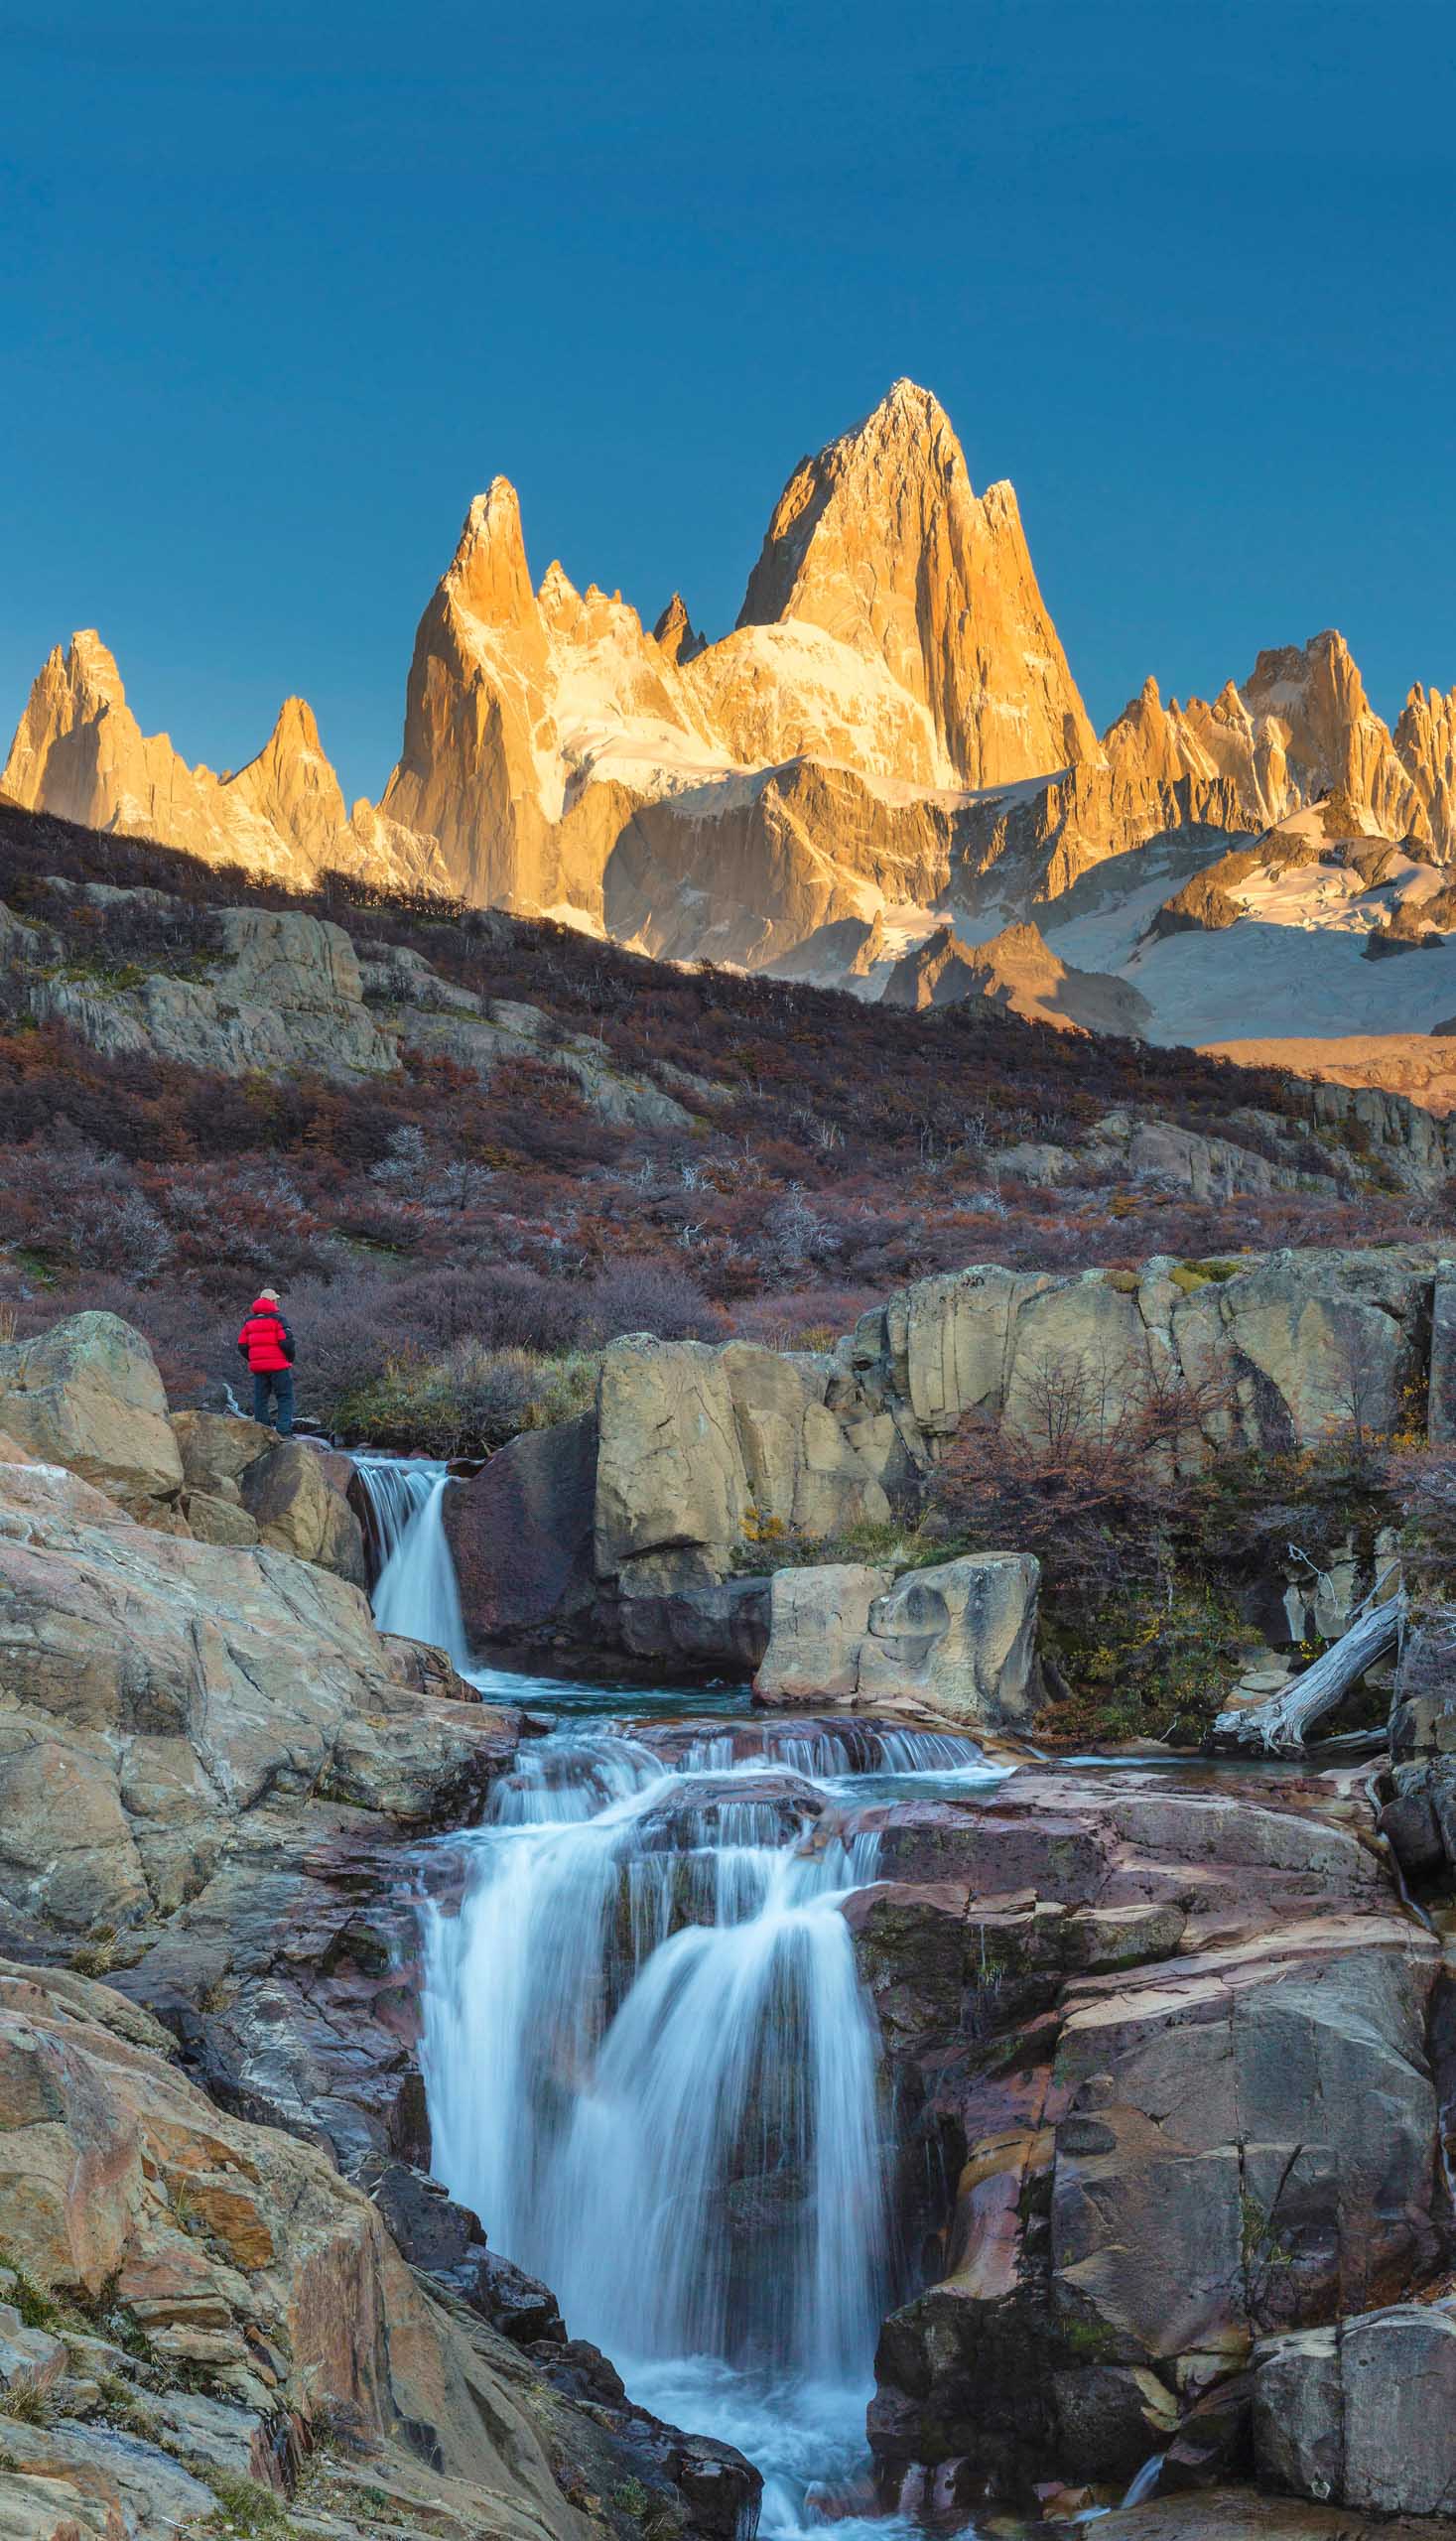 Waterfalls of Arroyo del Salto river in Patagonia.